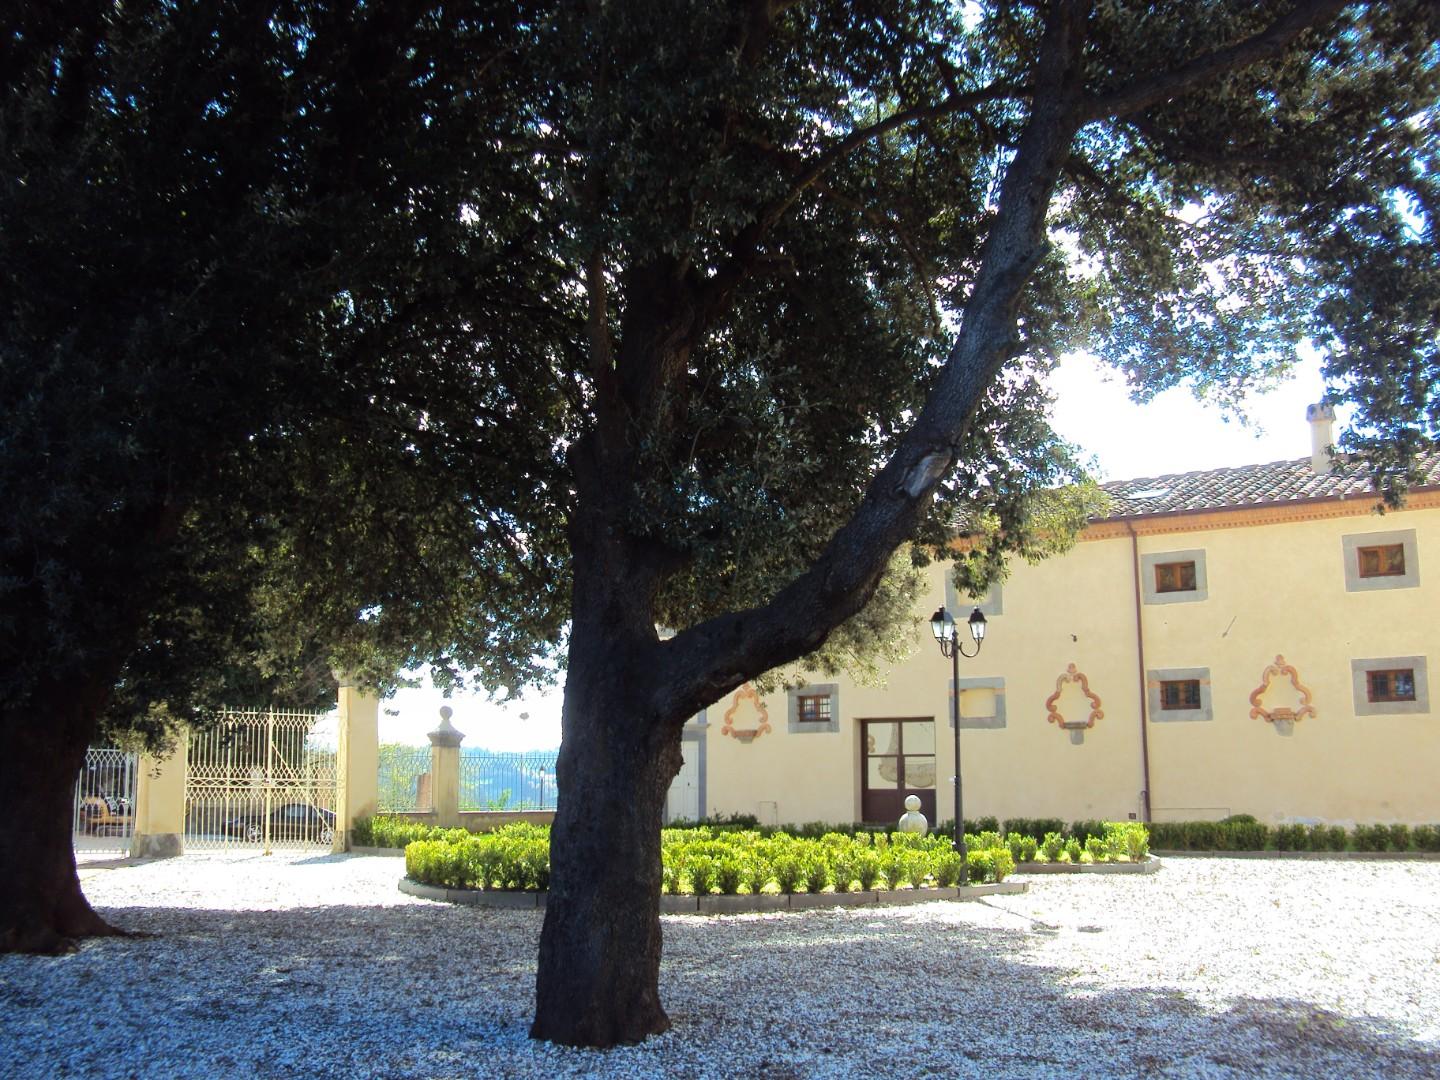 Villetta a schiera angolare in vendita a Casciana Terme Lari (PI)